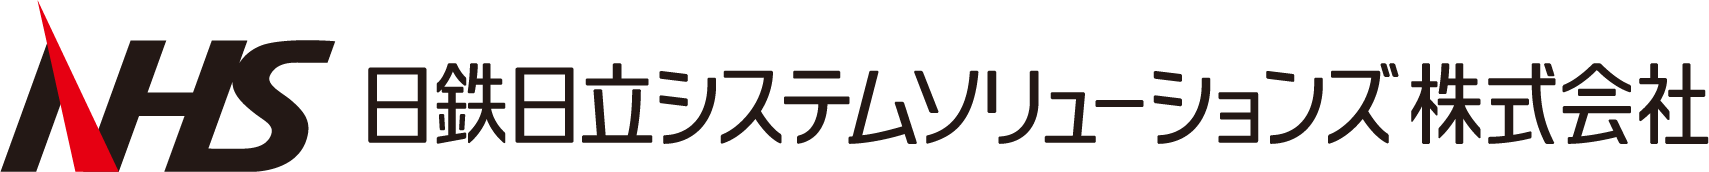 NHS_logo